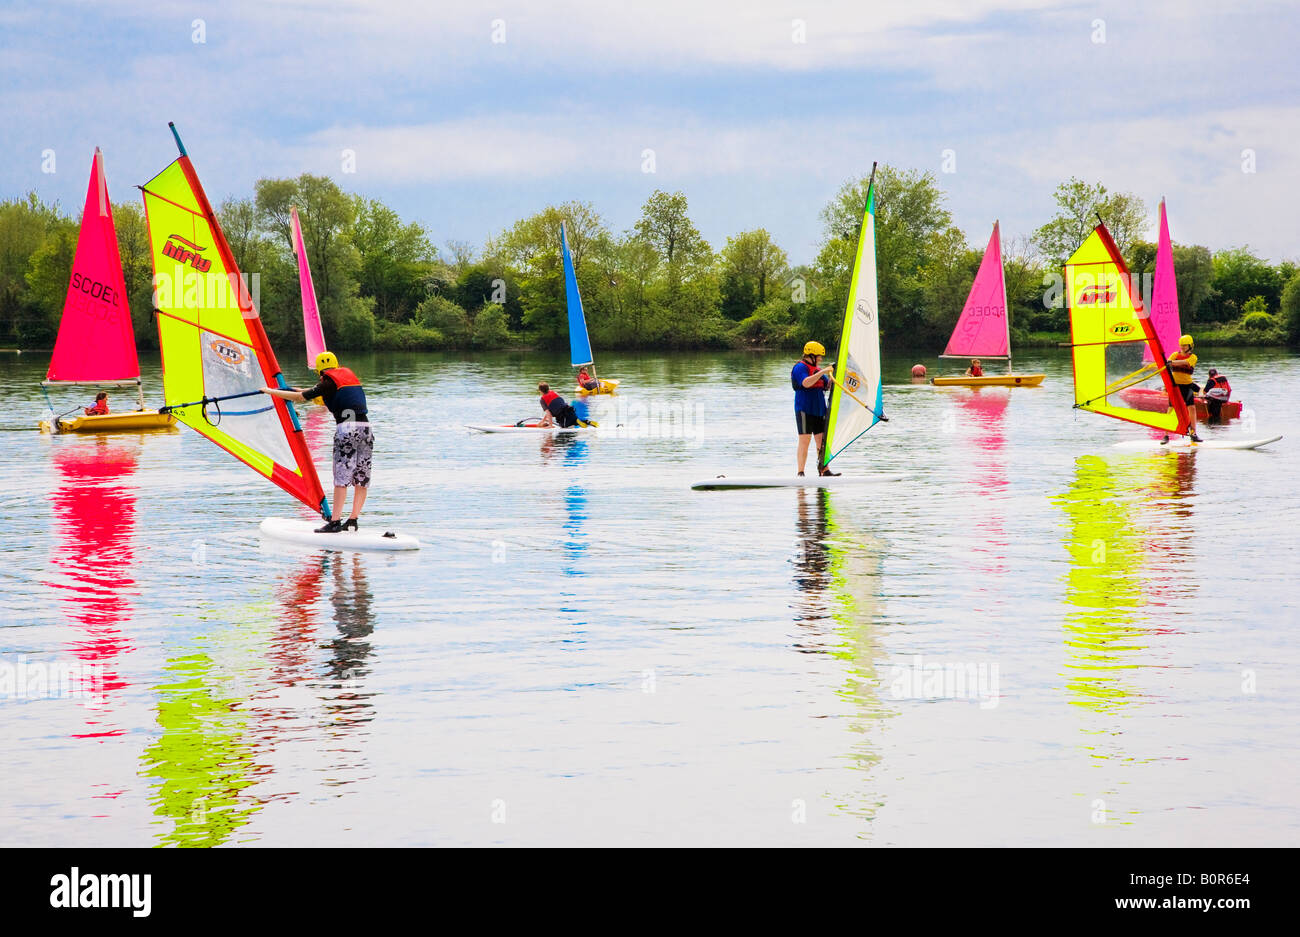 Gli appassionati di windsurf e barche a vela a South Cerney Outdoor Education Center, Cotswold Water Park, Gloucestershire, England, Regno Unito Foto Stock